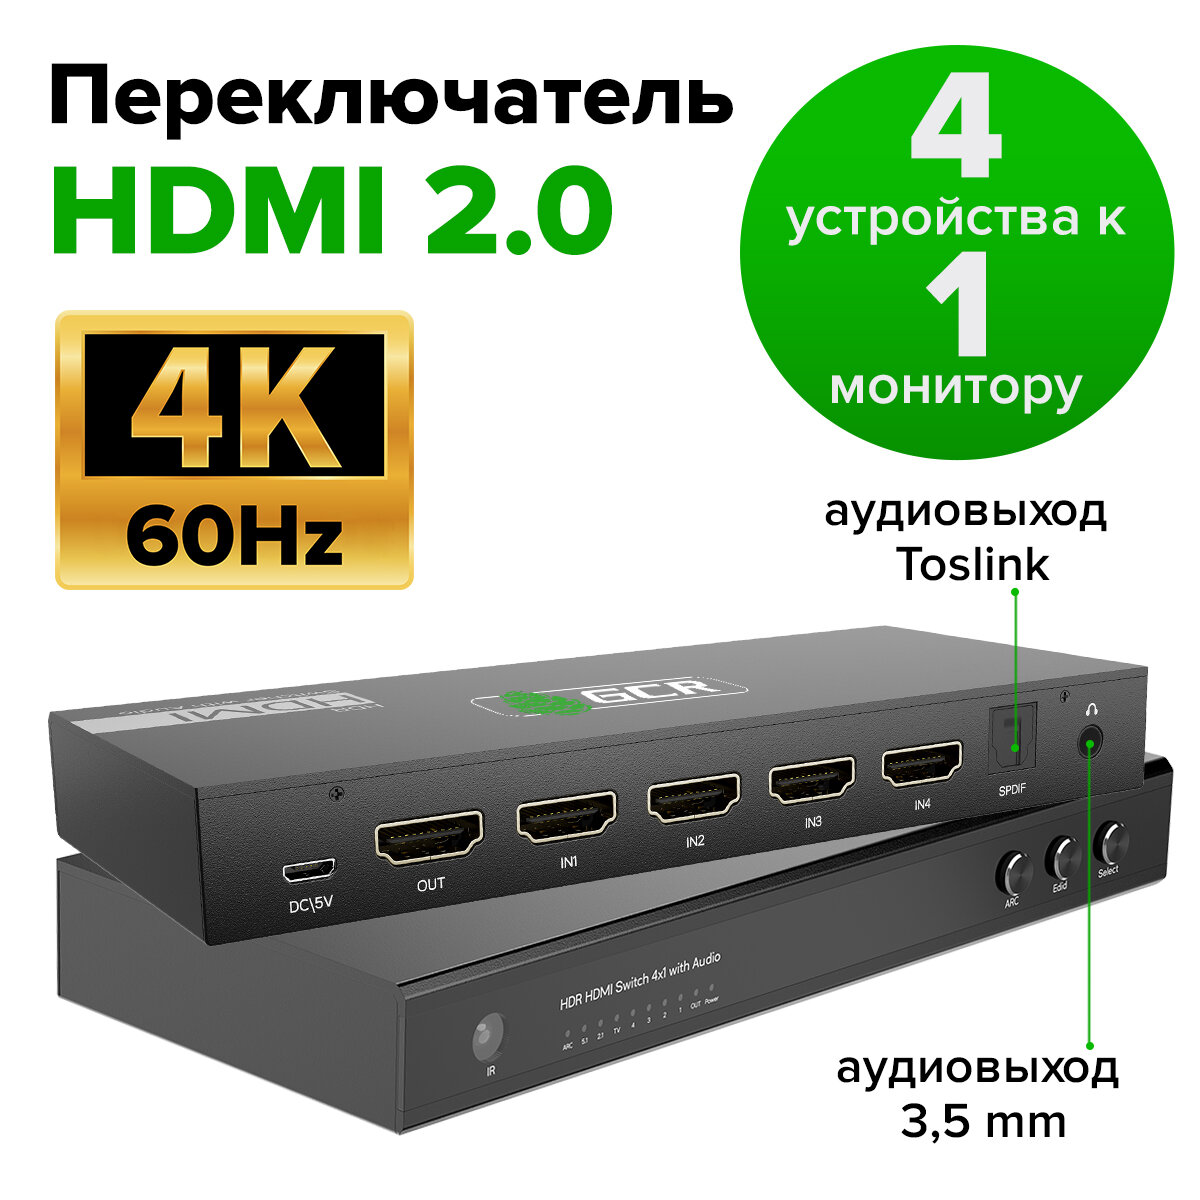 Переключатель HDMI 2.0 4 к 1 c AUDIO 4K60Hz с поддержкой ARS SPDIF + пульт ДУ (GCR-vTC02) черный